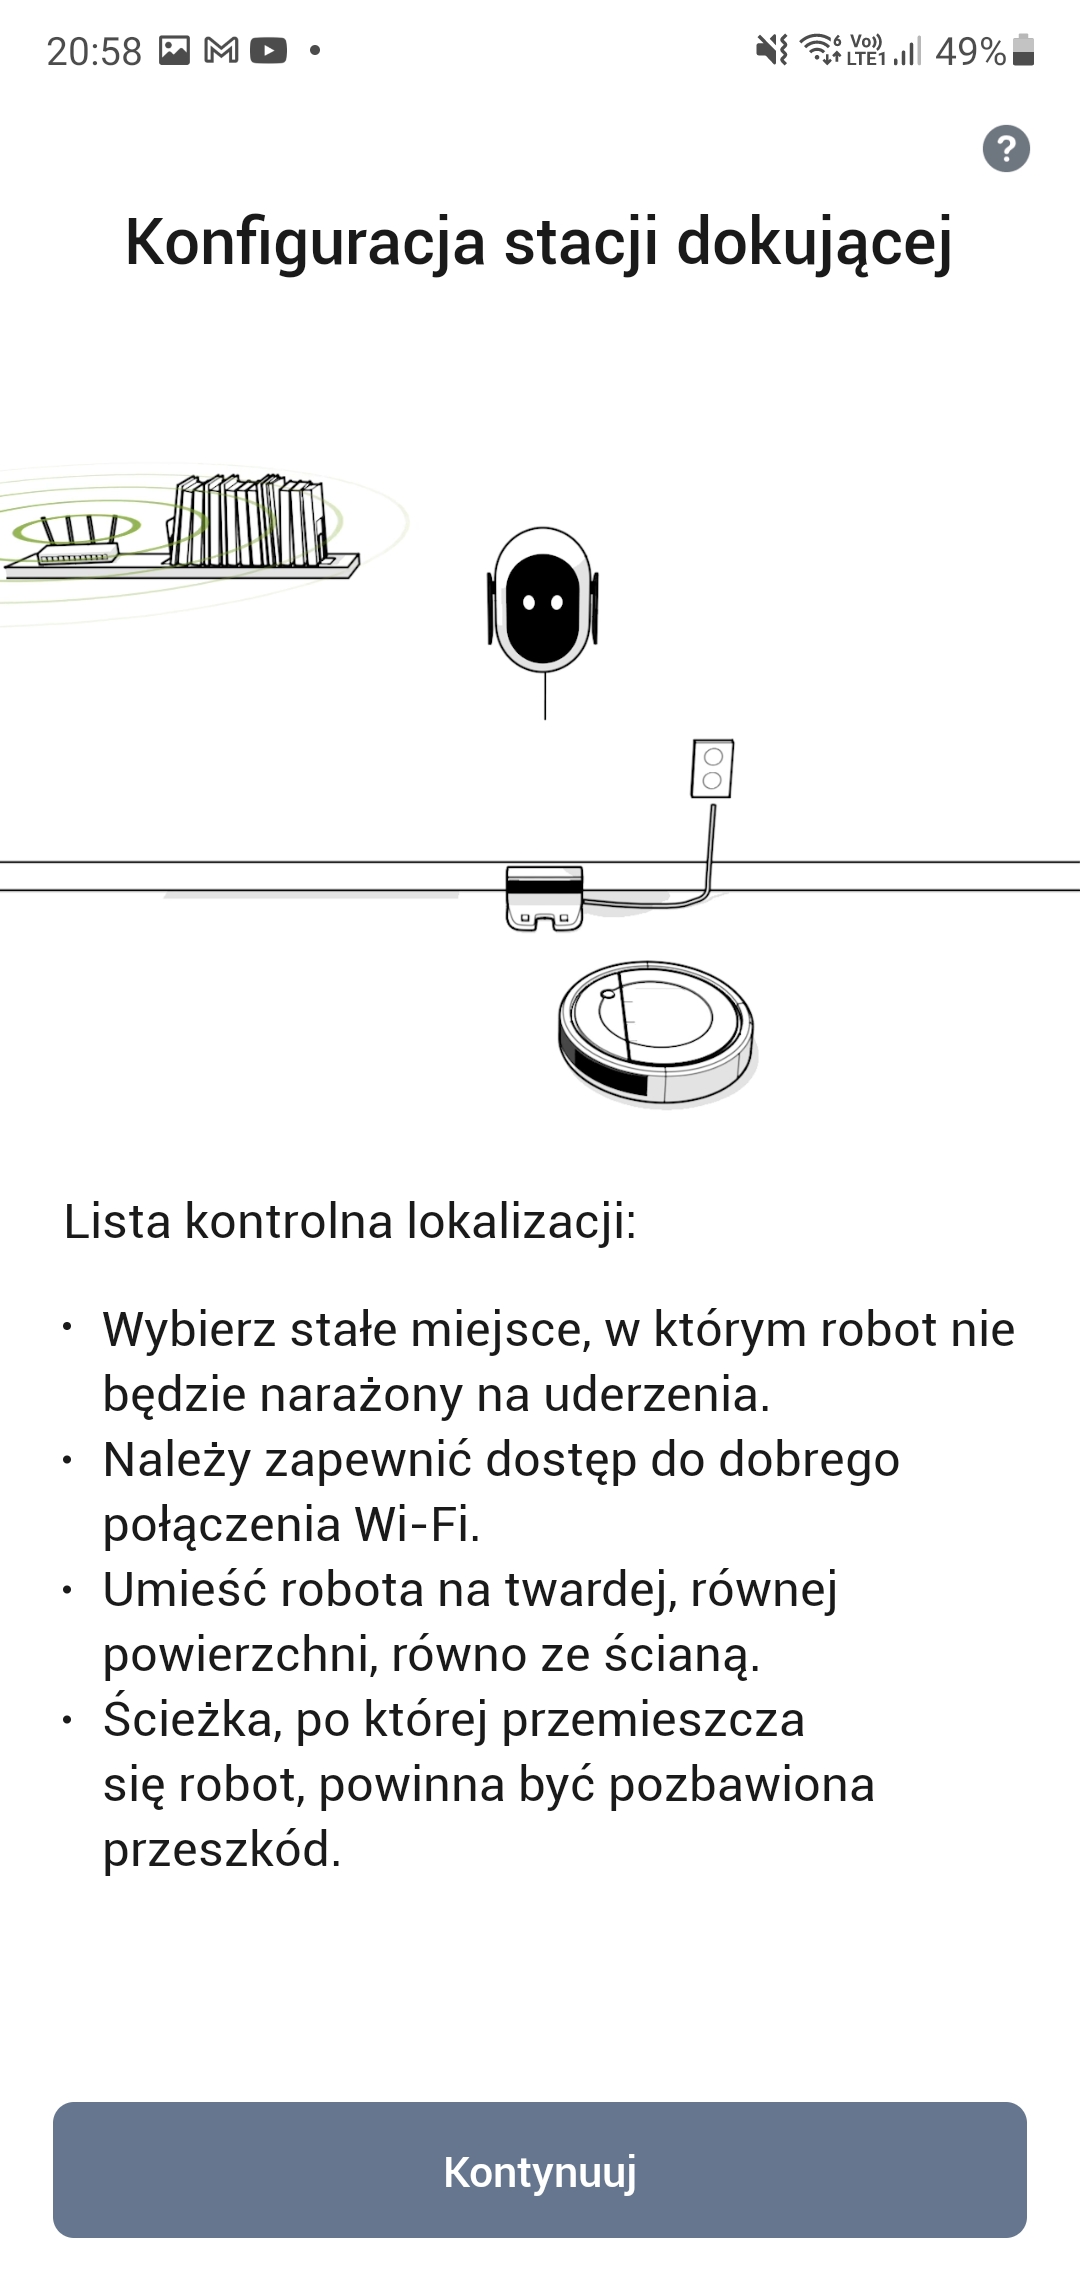 Recenzja iRobot Roomba Combo - taniej hybrydy odkurzacza automatycznego i robota mopującego